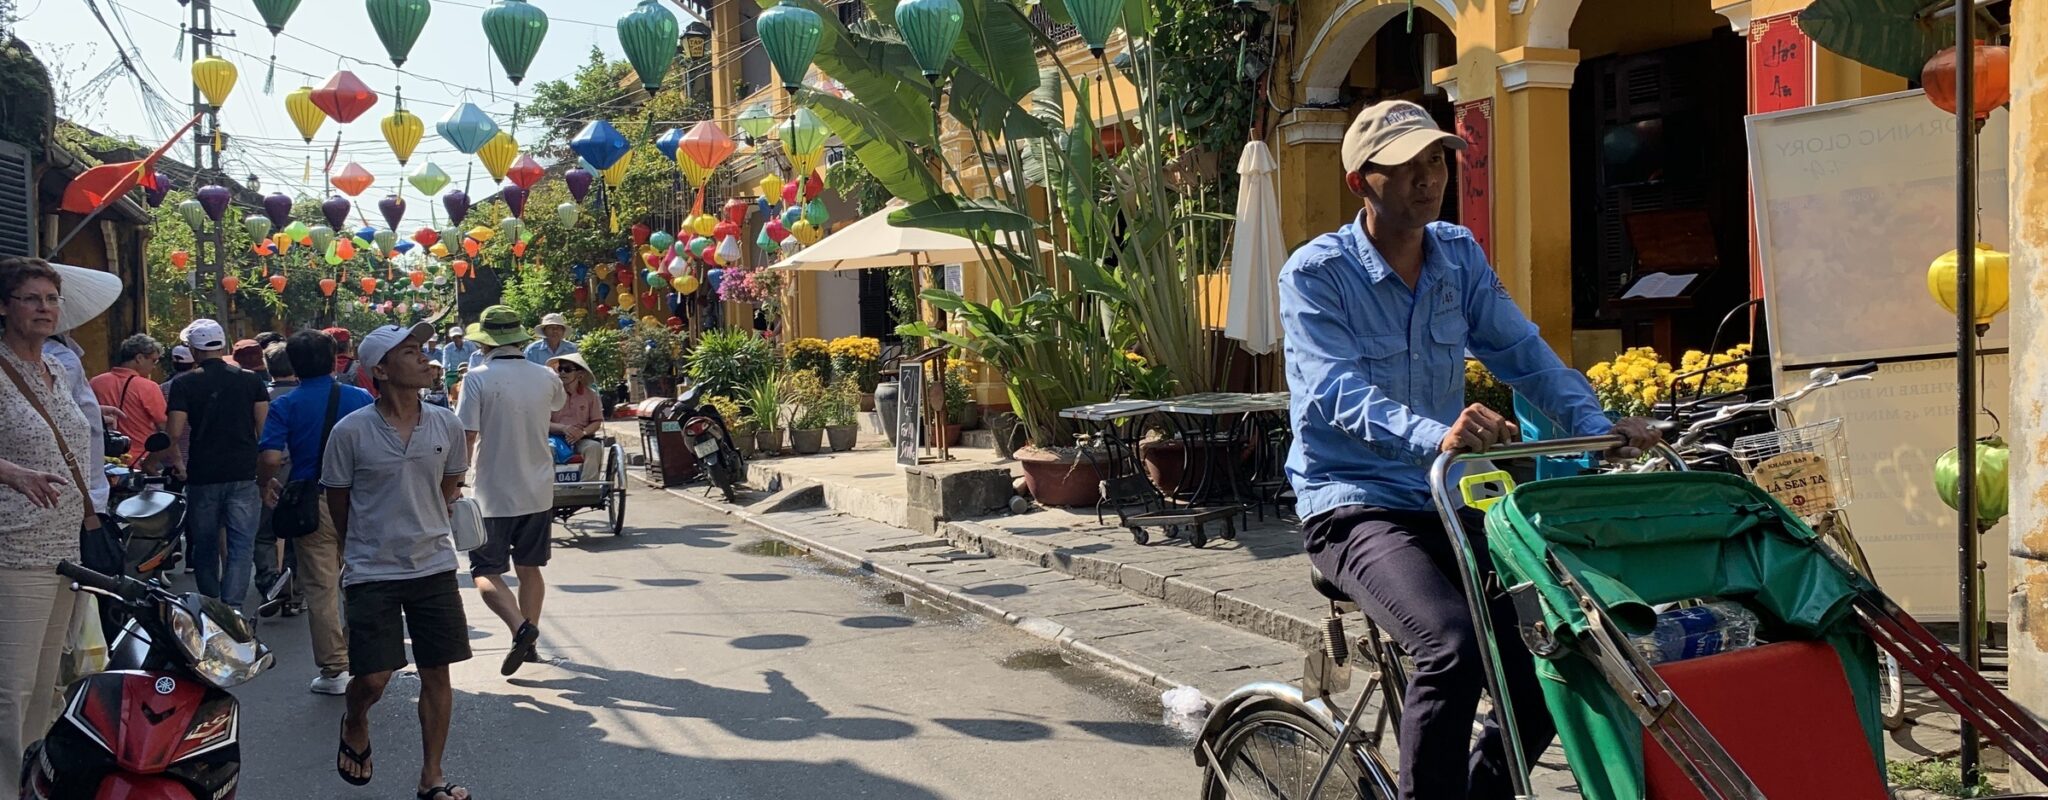 Streets of Hoi An, Vietnam